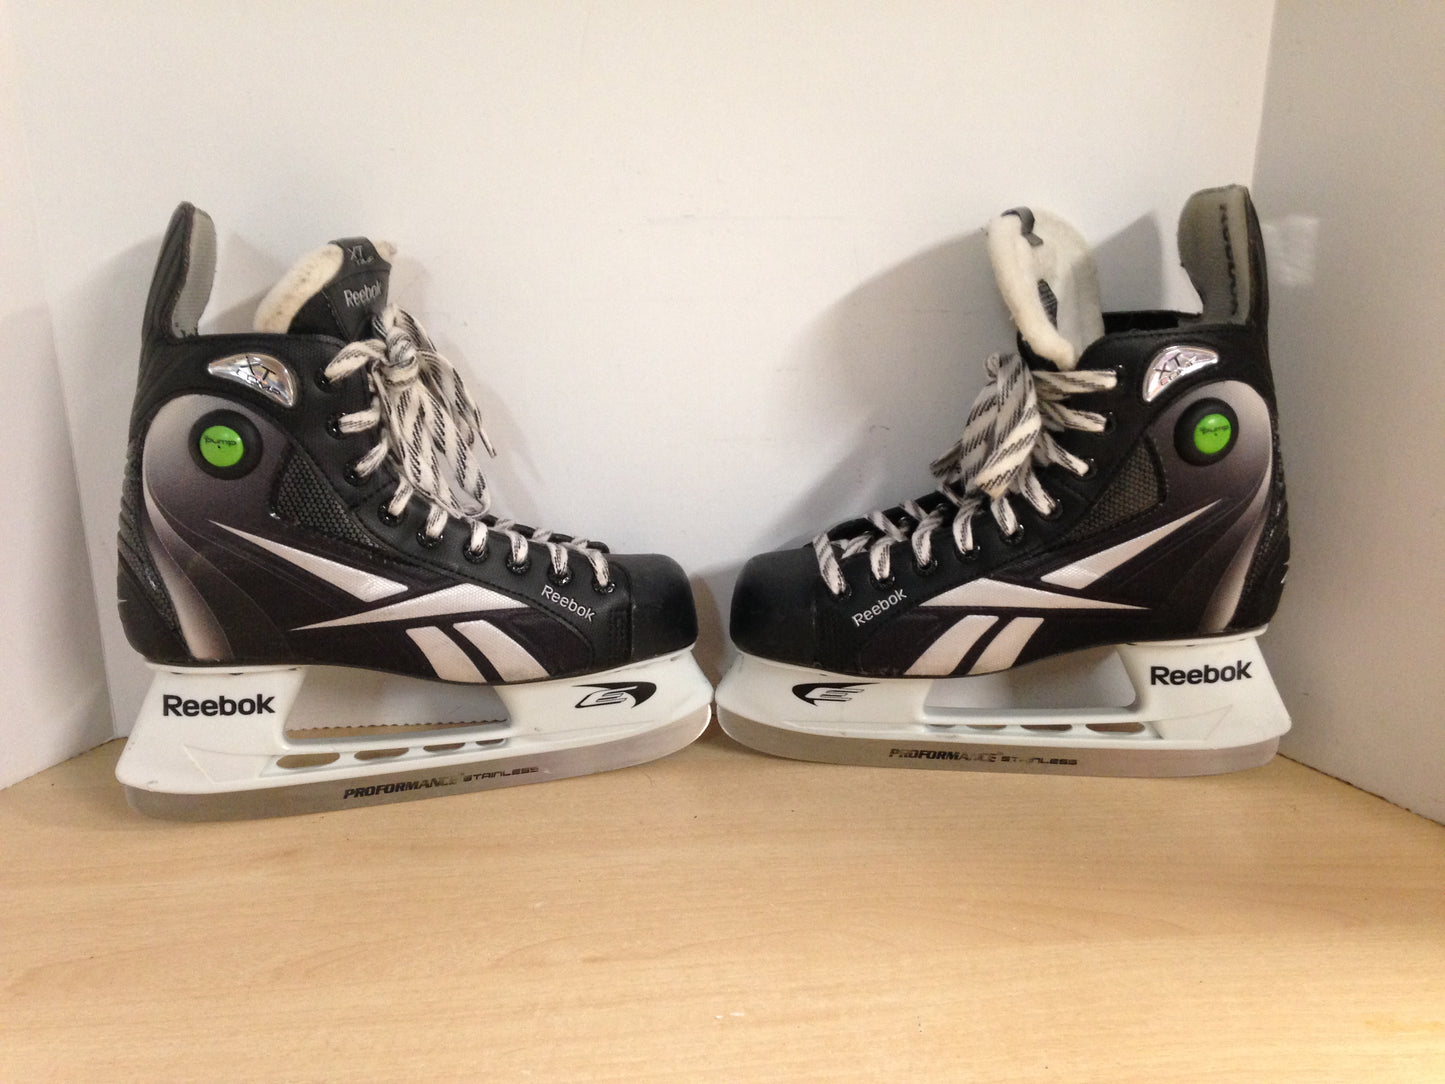 Hockey Skates Men's Size 8.5 Shoe Size Reebok Pump As New